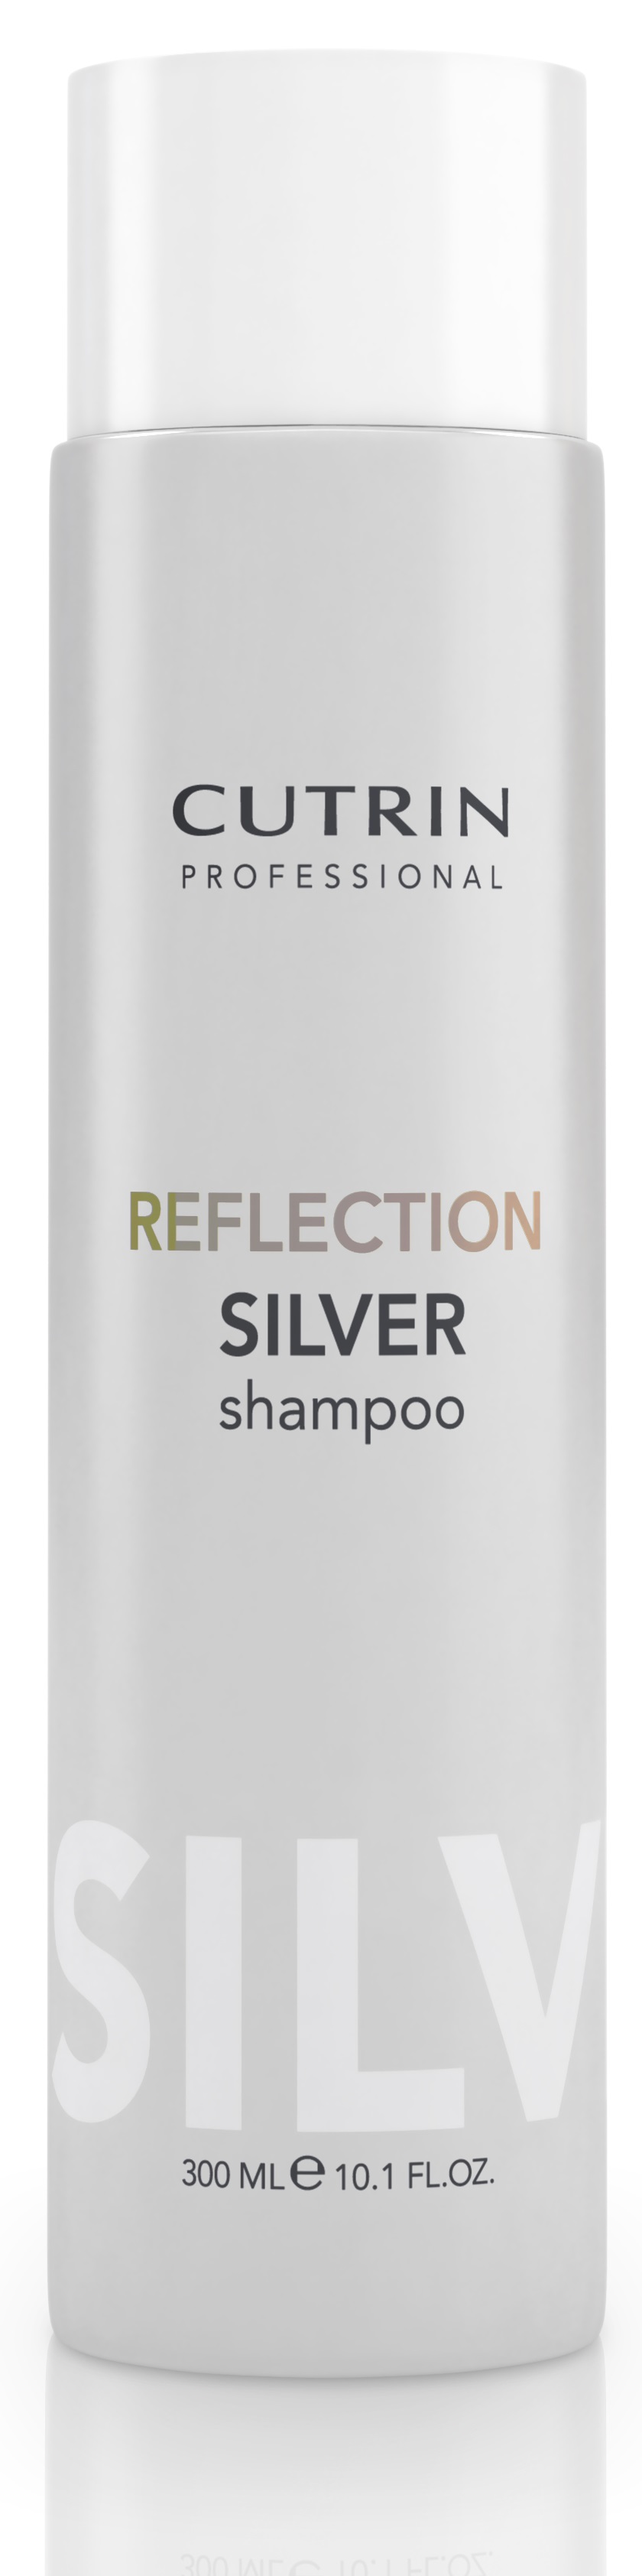 Cutrin Reflection Silver Shampoo